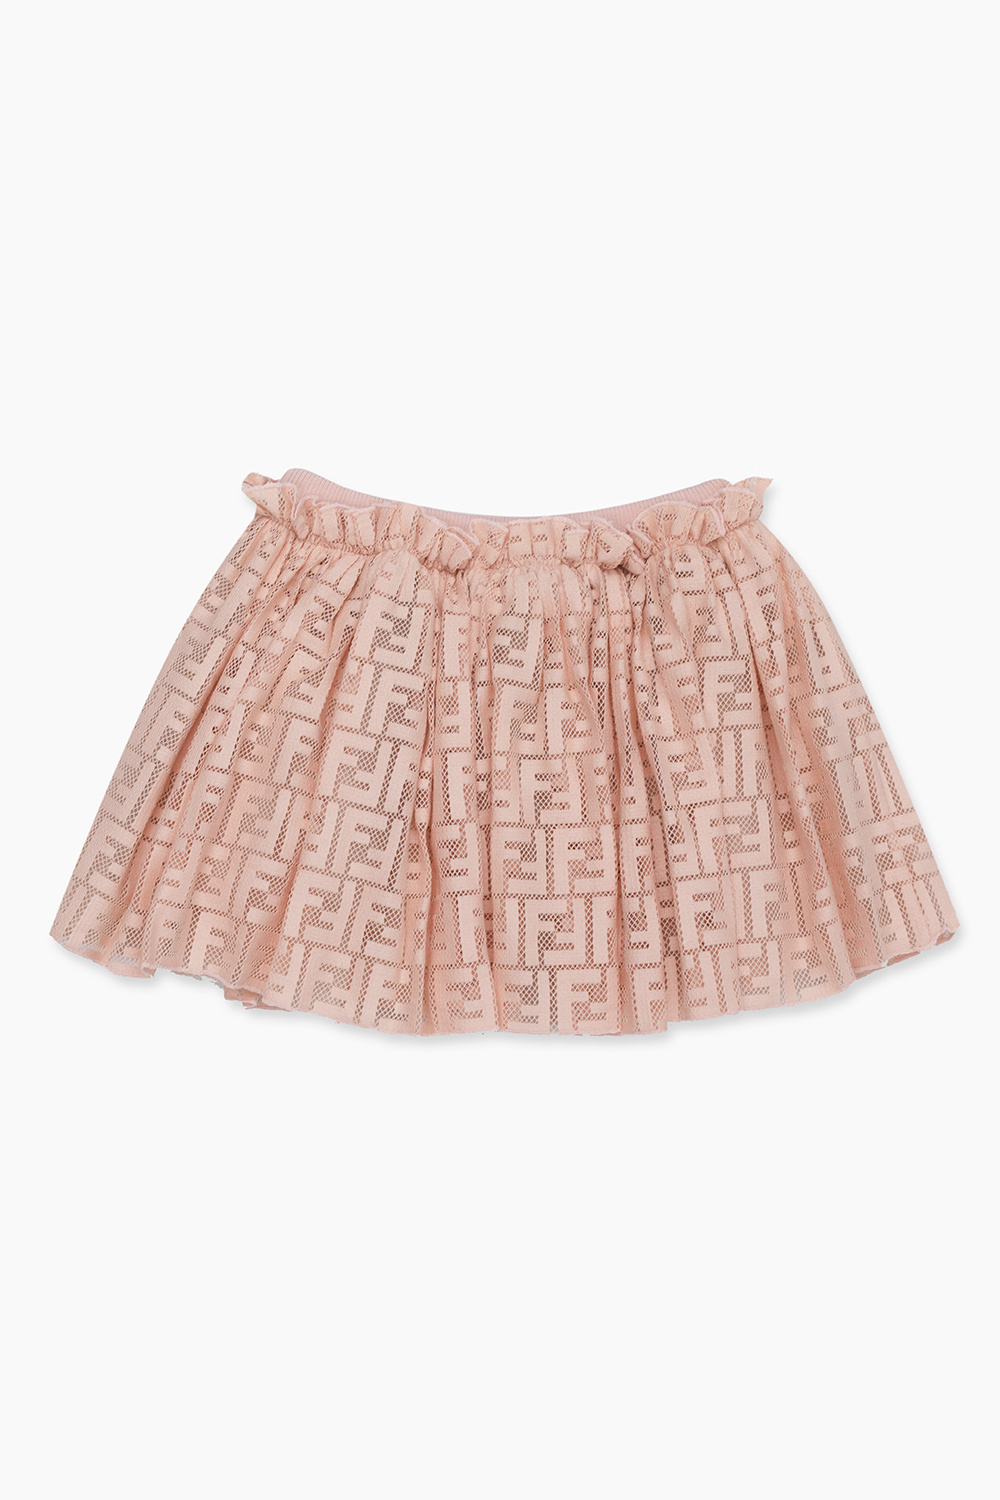 Fendi Kids Monogrammed skirt